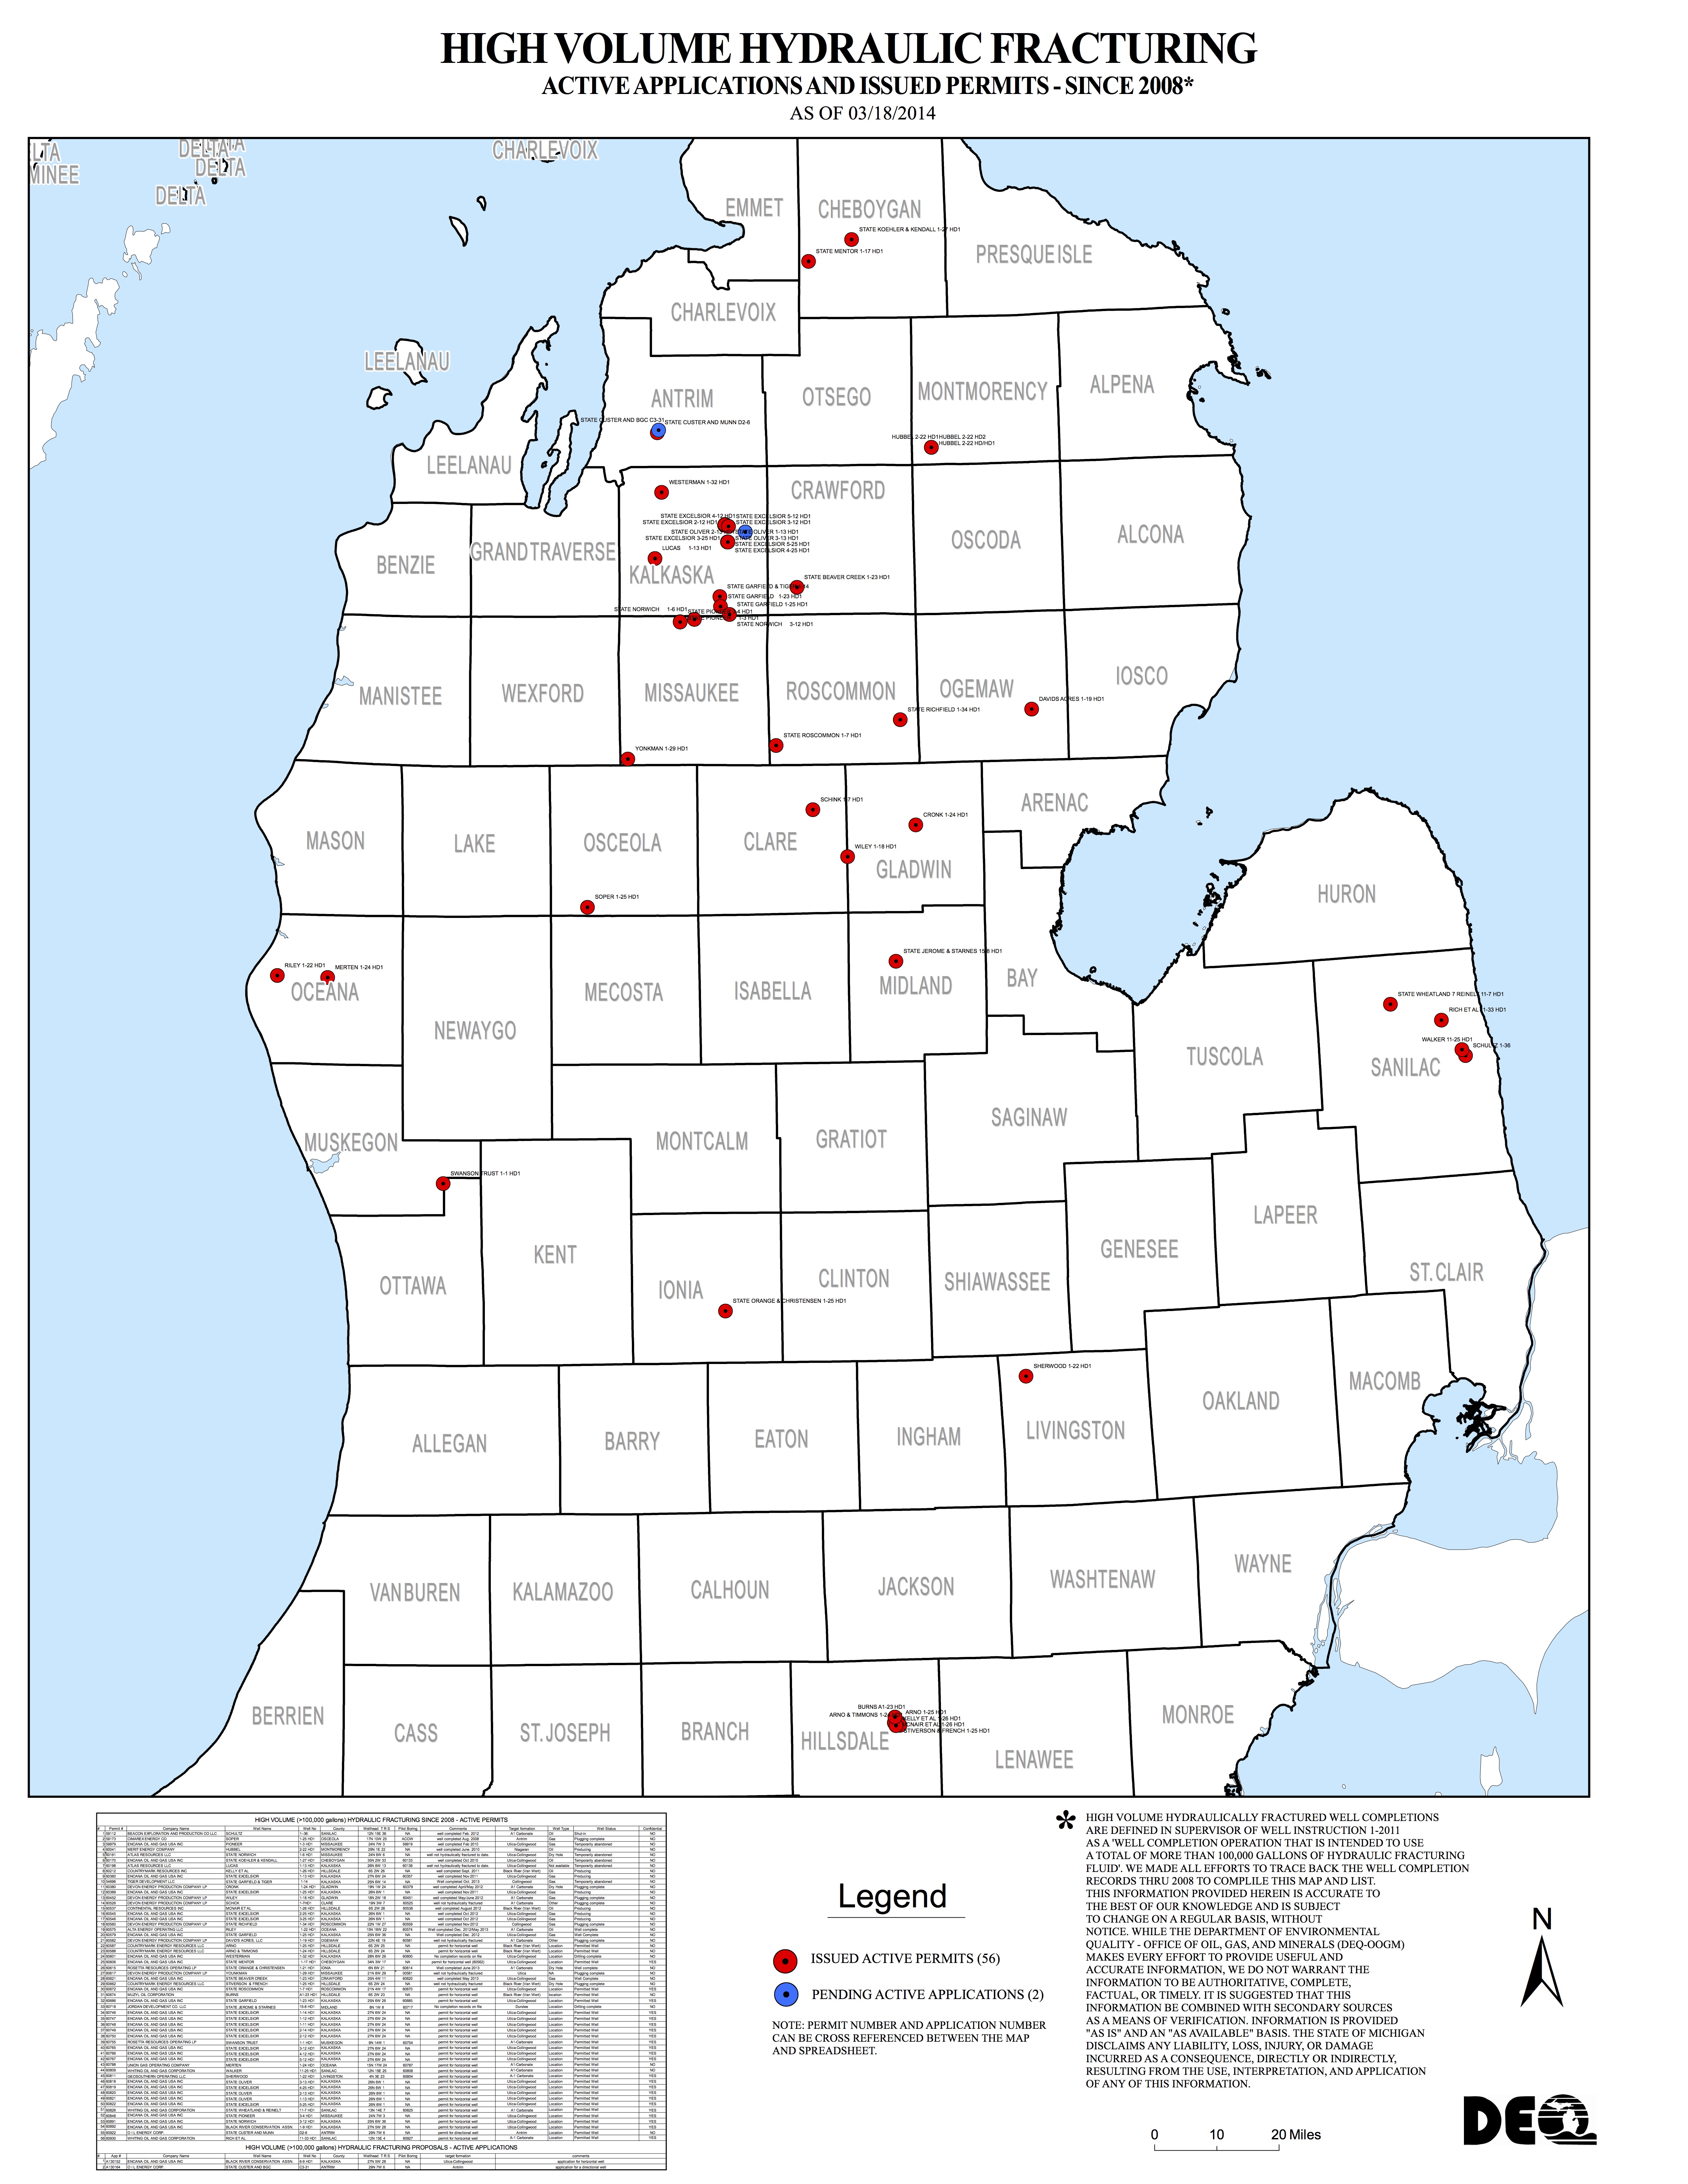 Maps Ban Michigan Fracking